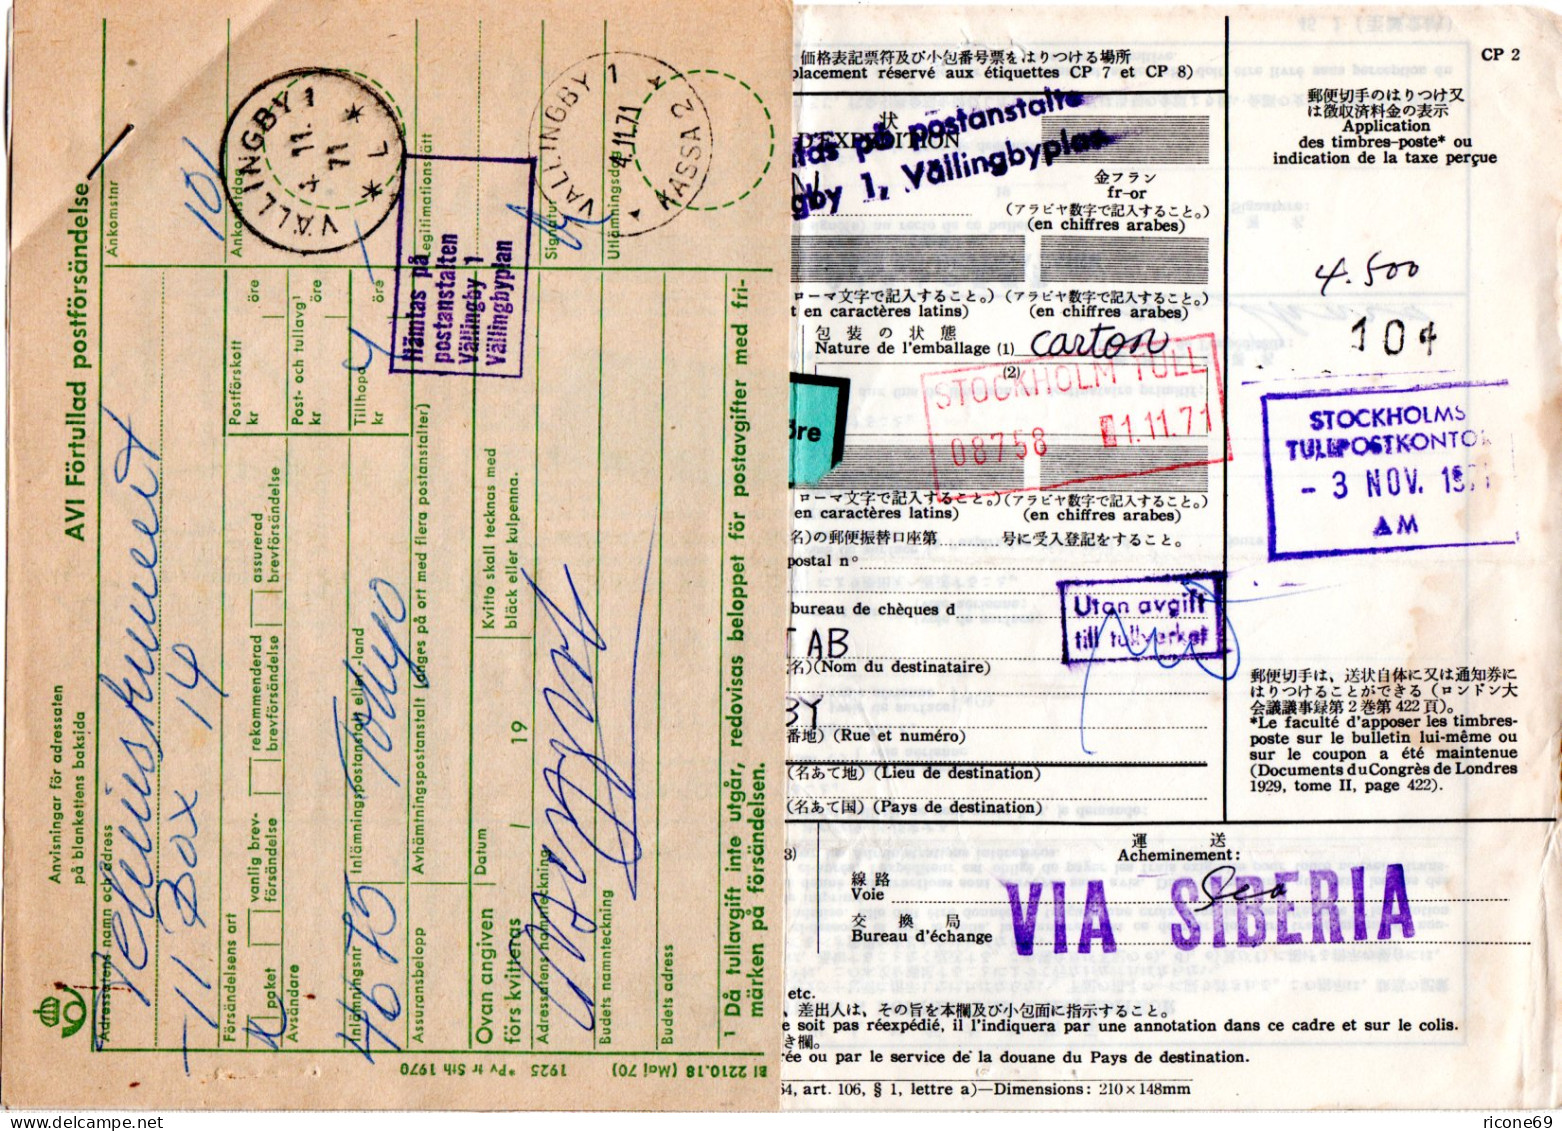 Japan 1971, Paketkarte V. Tokyo M. Schweden Postformular U. Porto Etikett - Sonstige - Asien